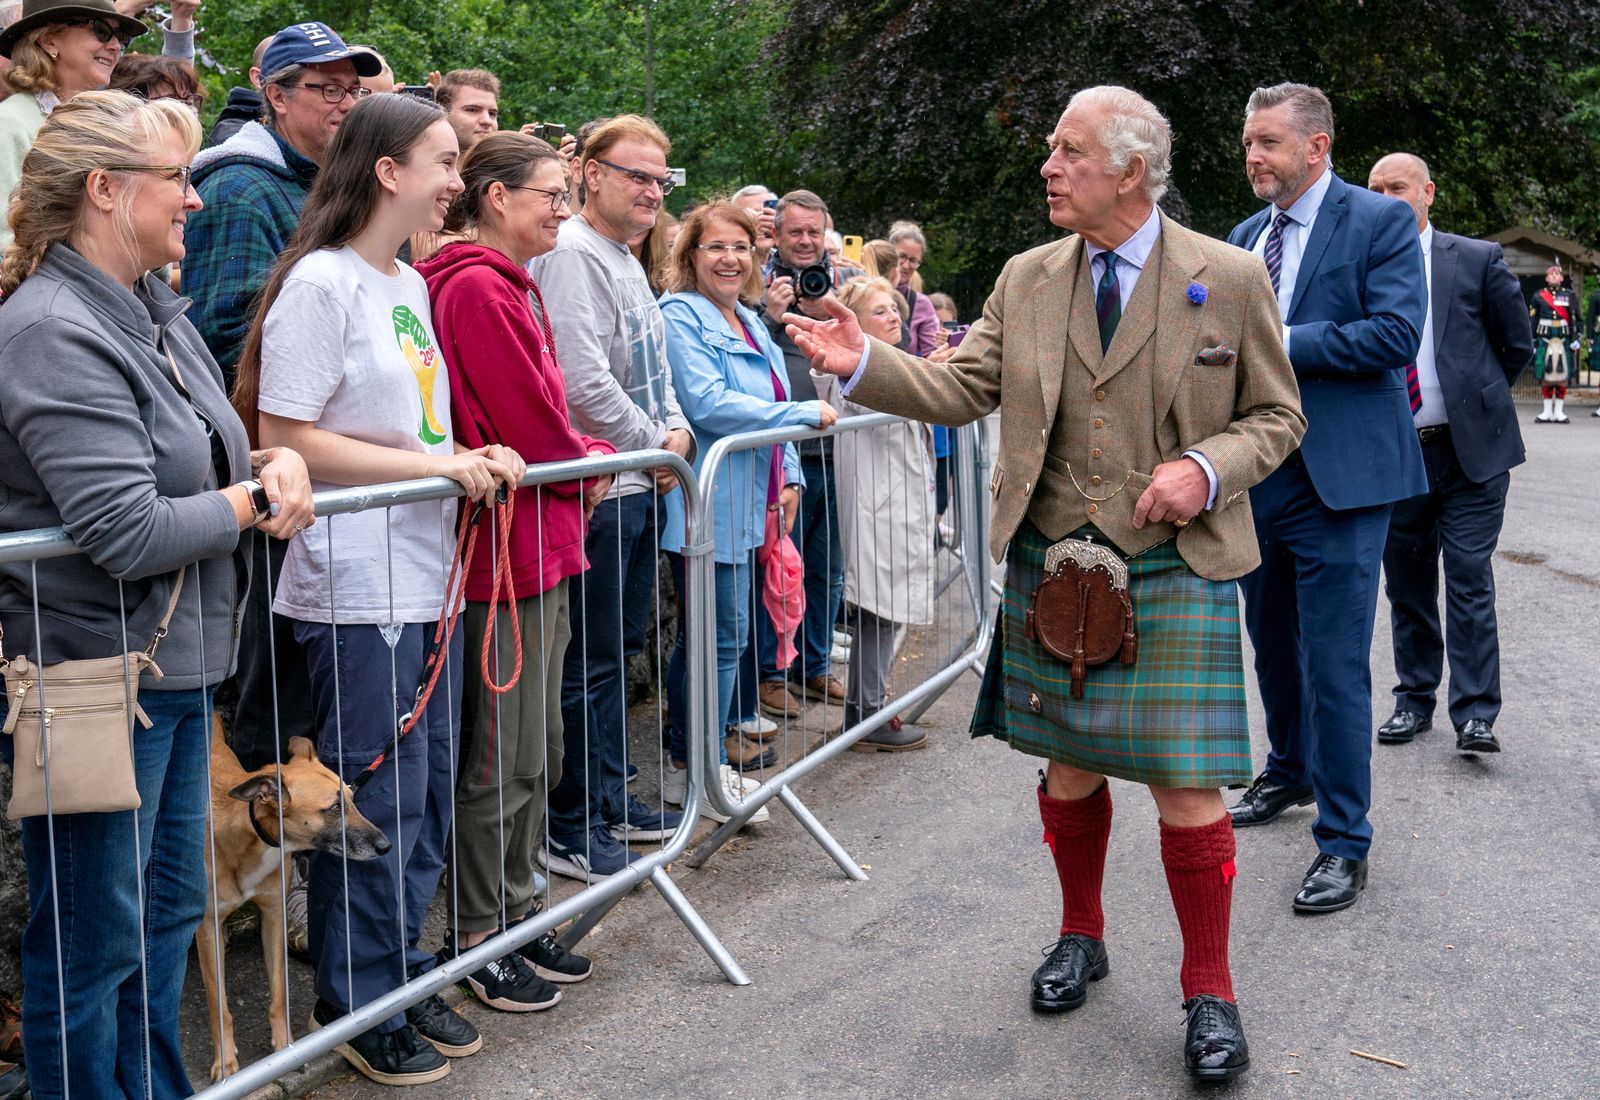 ملك بريطانيا تشارلز الثالث يلتقي أفراد من الجمهور في اسكتلندا عند بوابات بالمورال. 21 أغسطس 2023 - via REUTERS